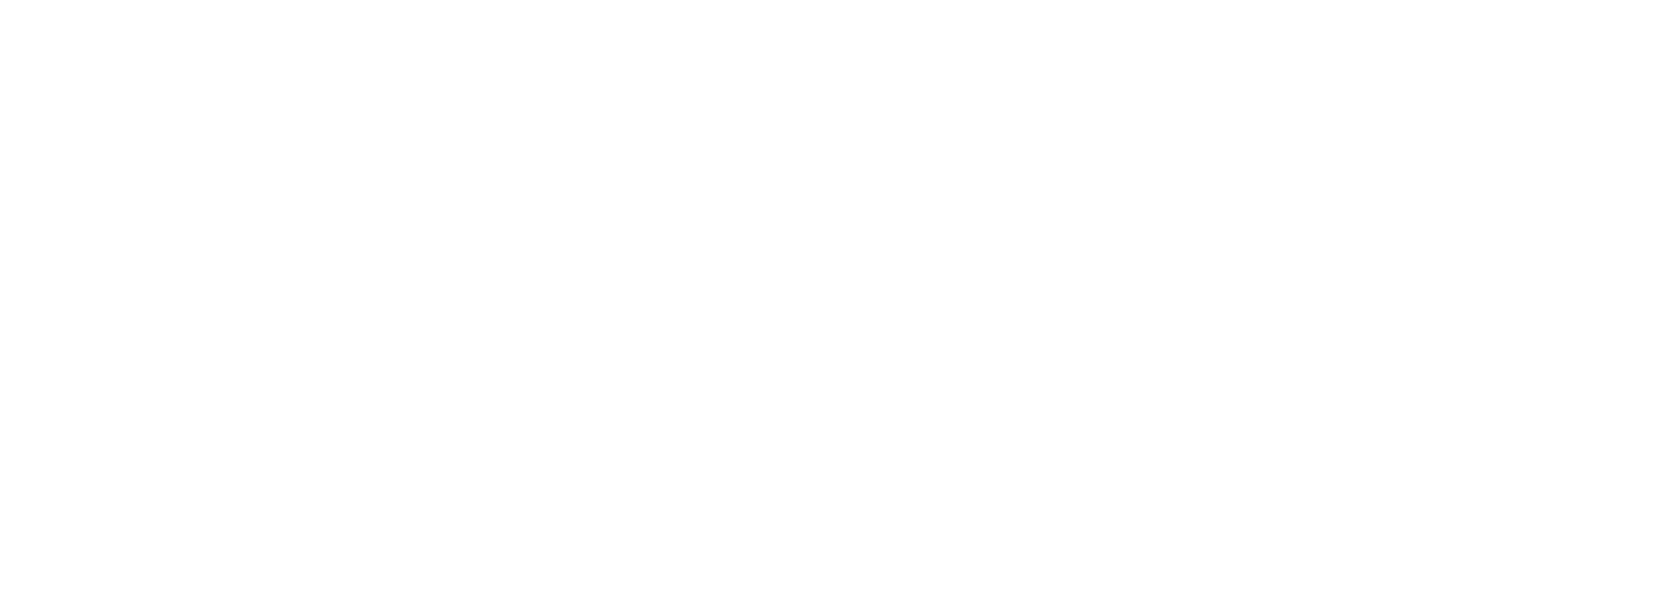 penn-engineering.png